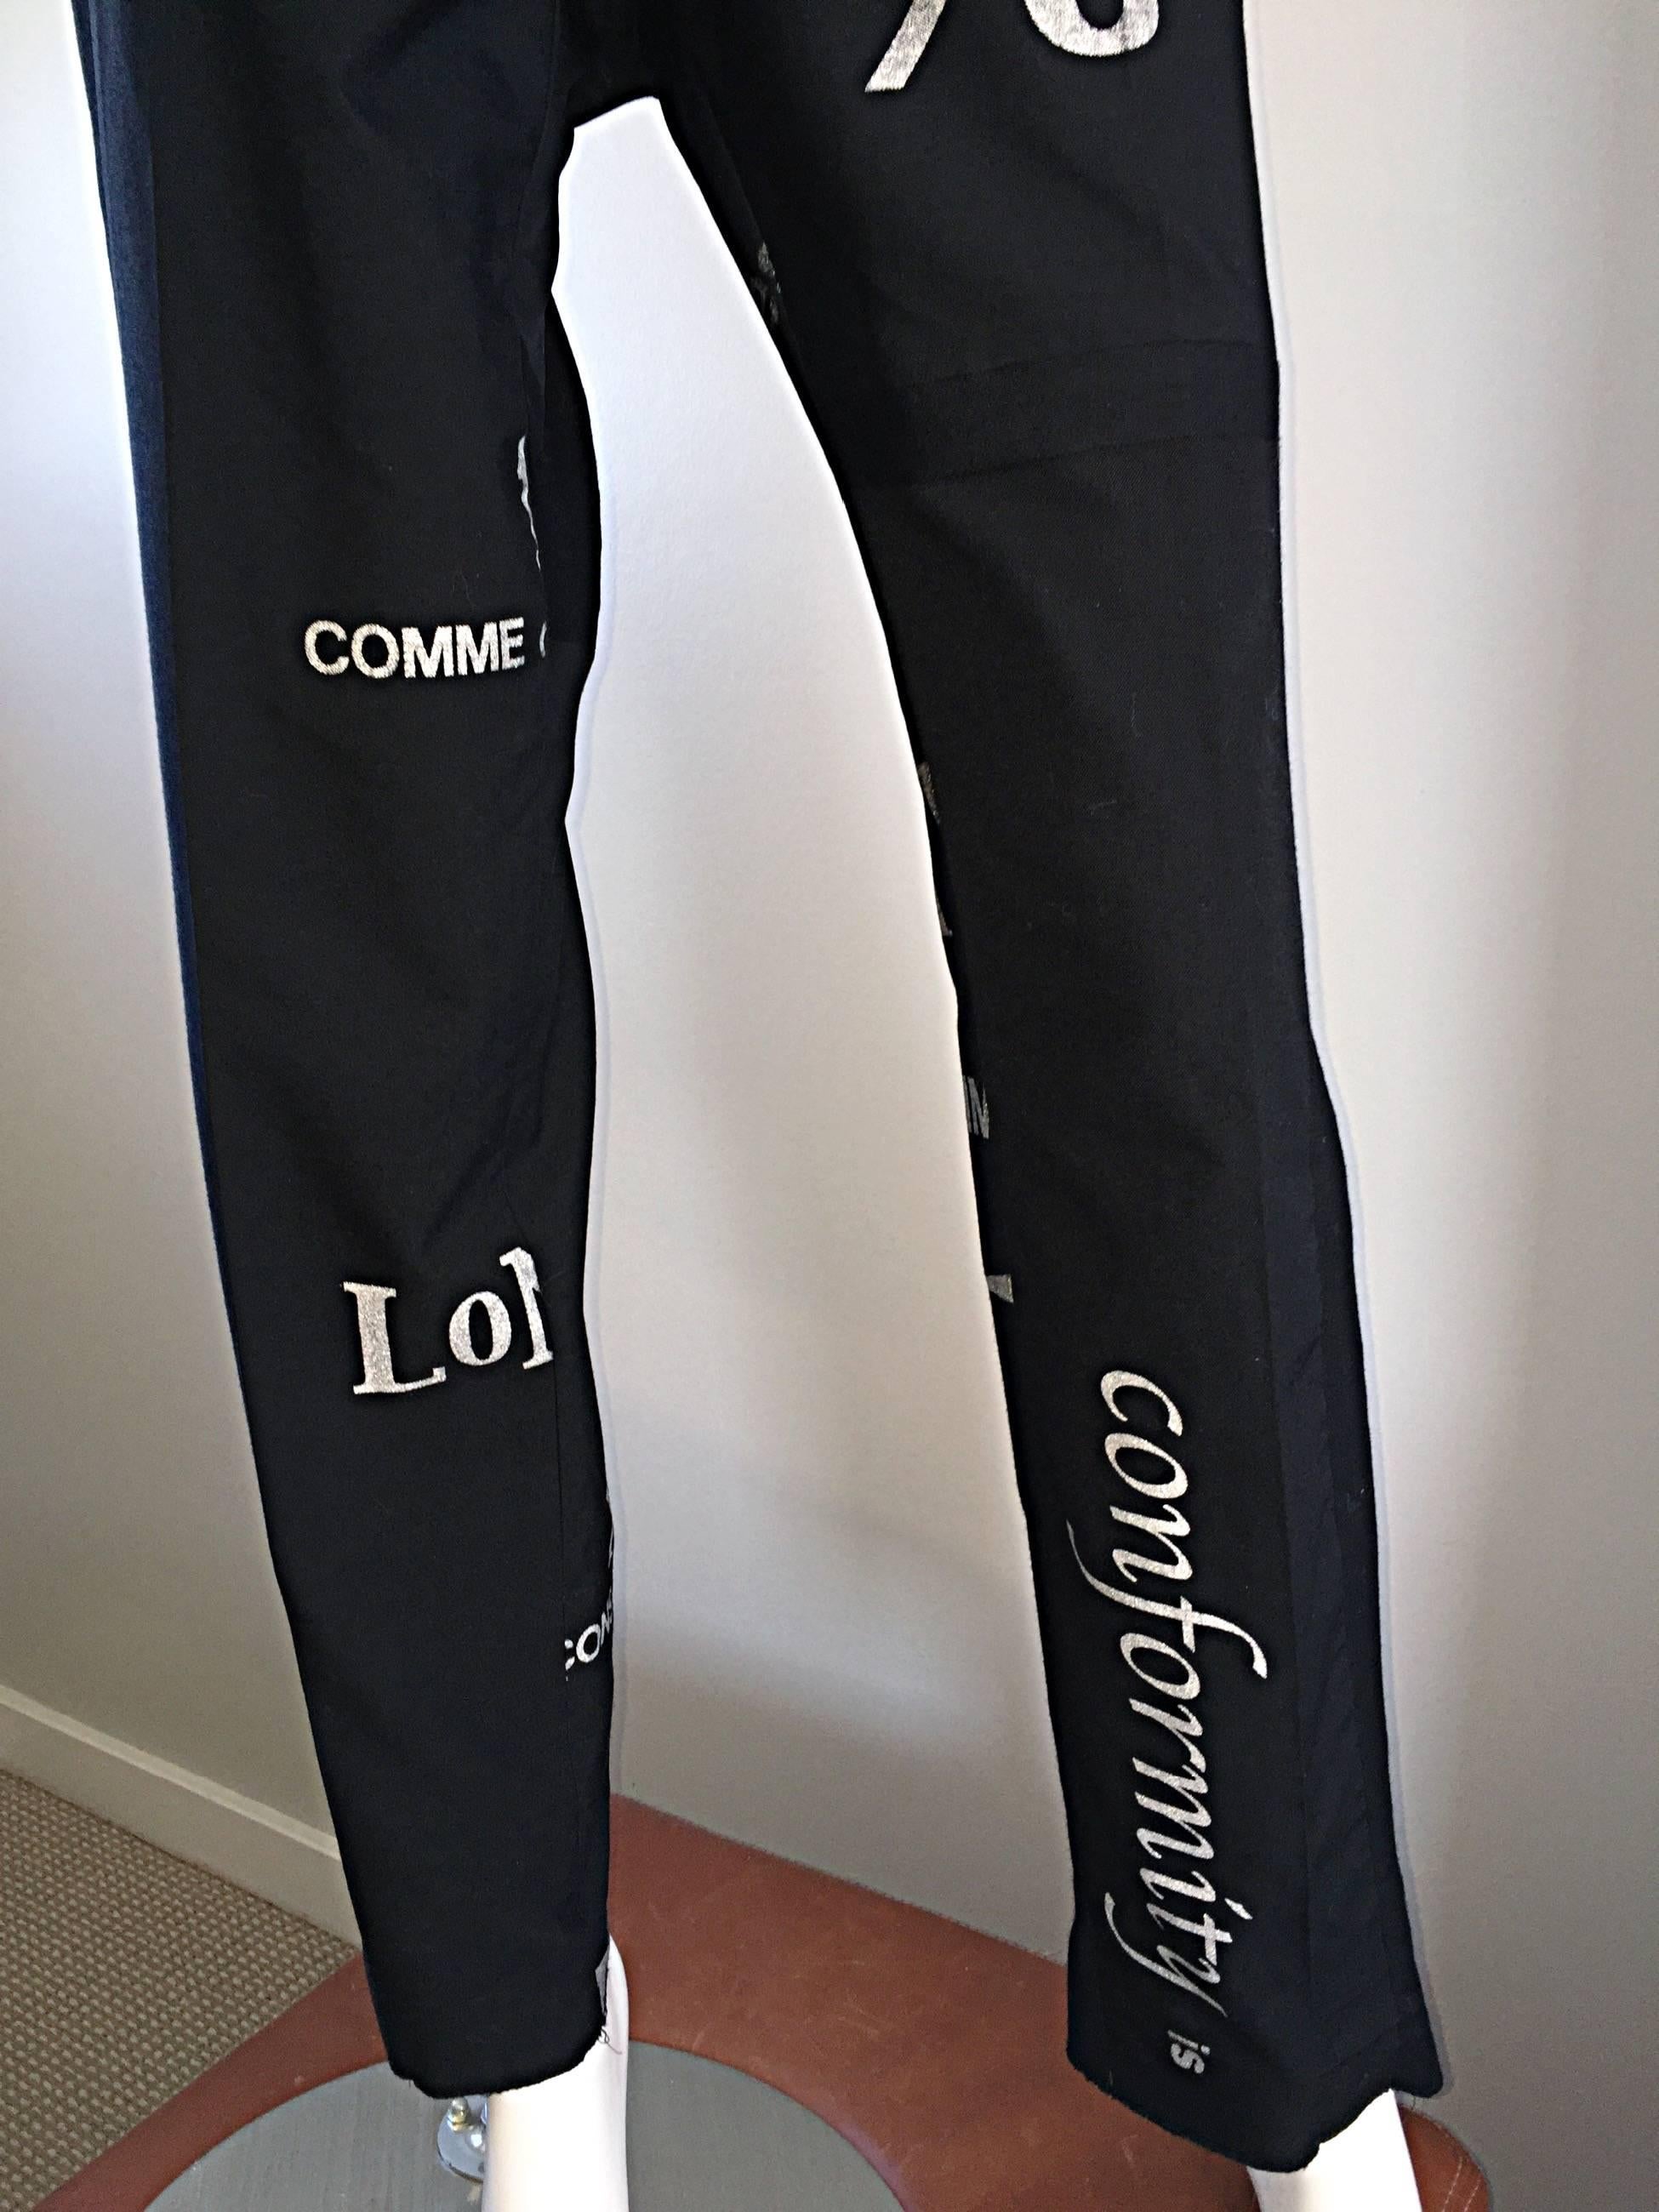 Rare Vintage Comme des Garcons Black Graffiti Unisex Conformity Pants / Trousers 2